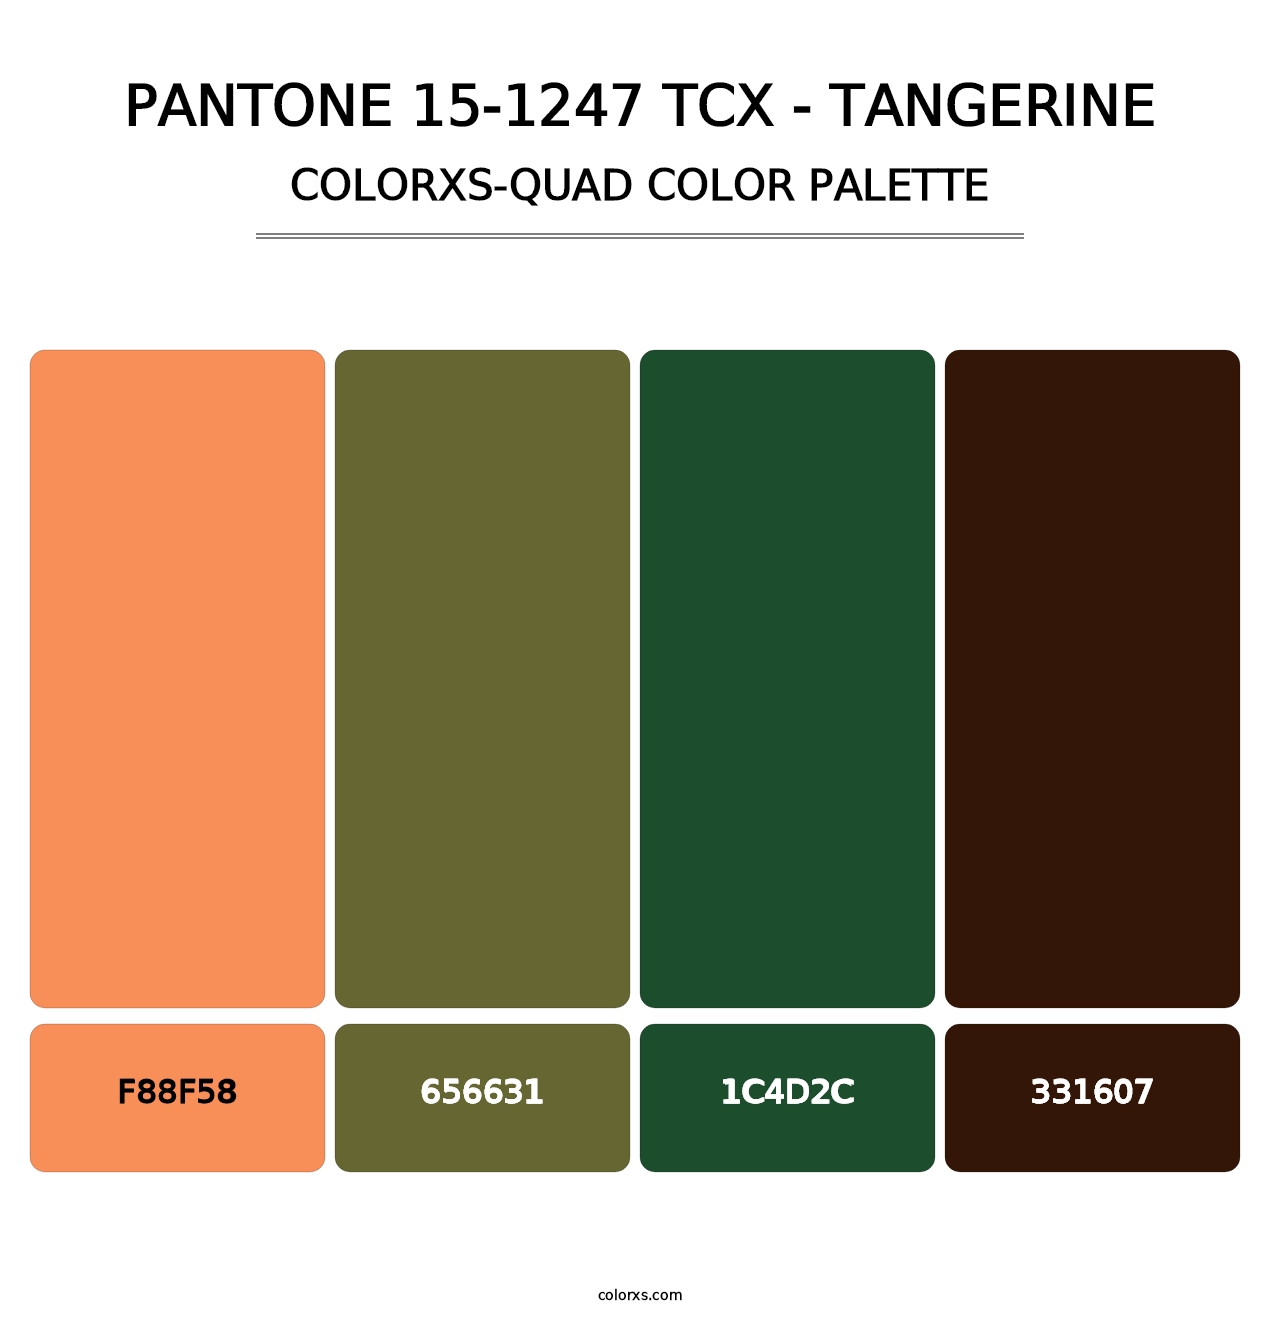 PANTONE 15-1247 TCX - Tangerine - Colorxs Quad Palette